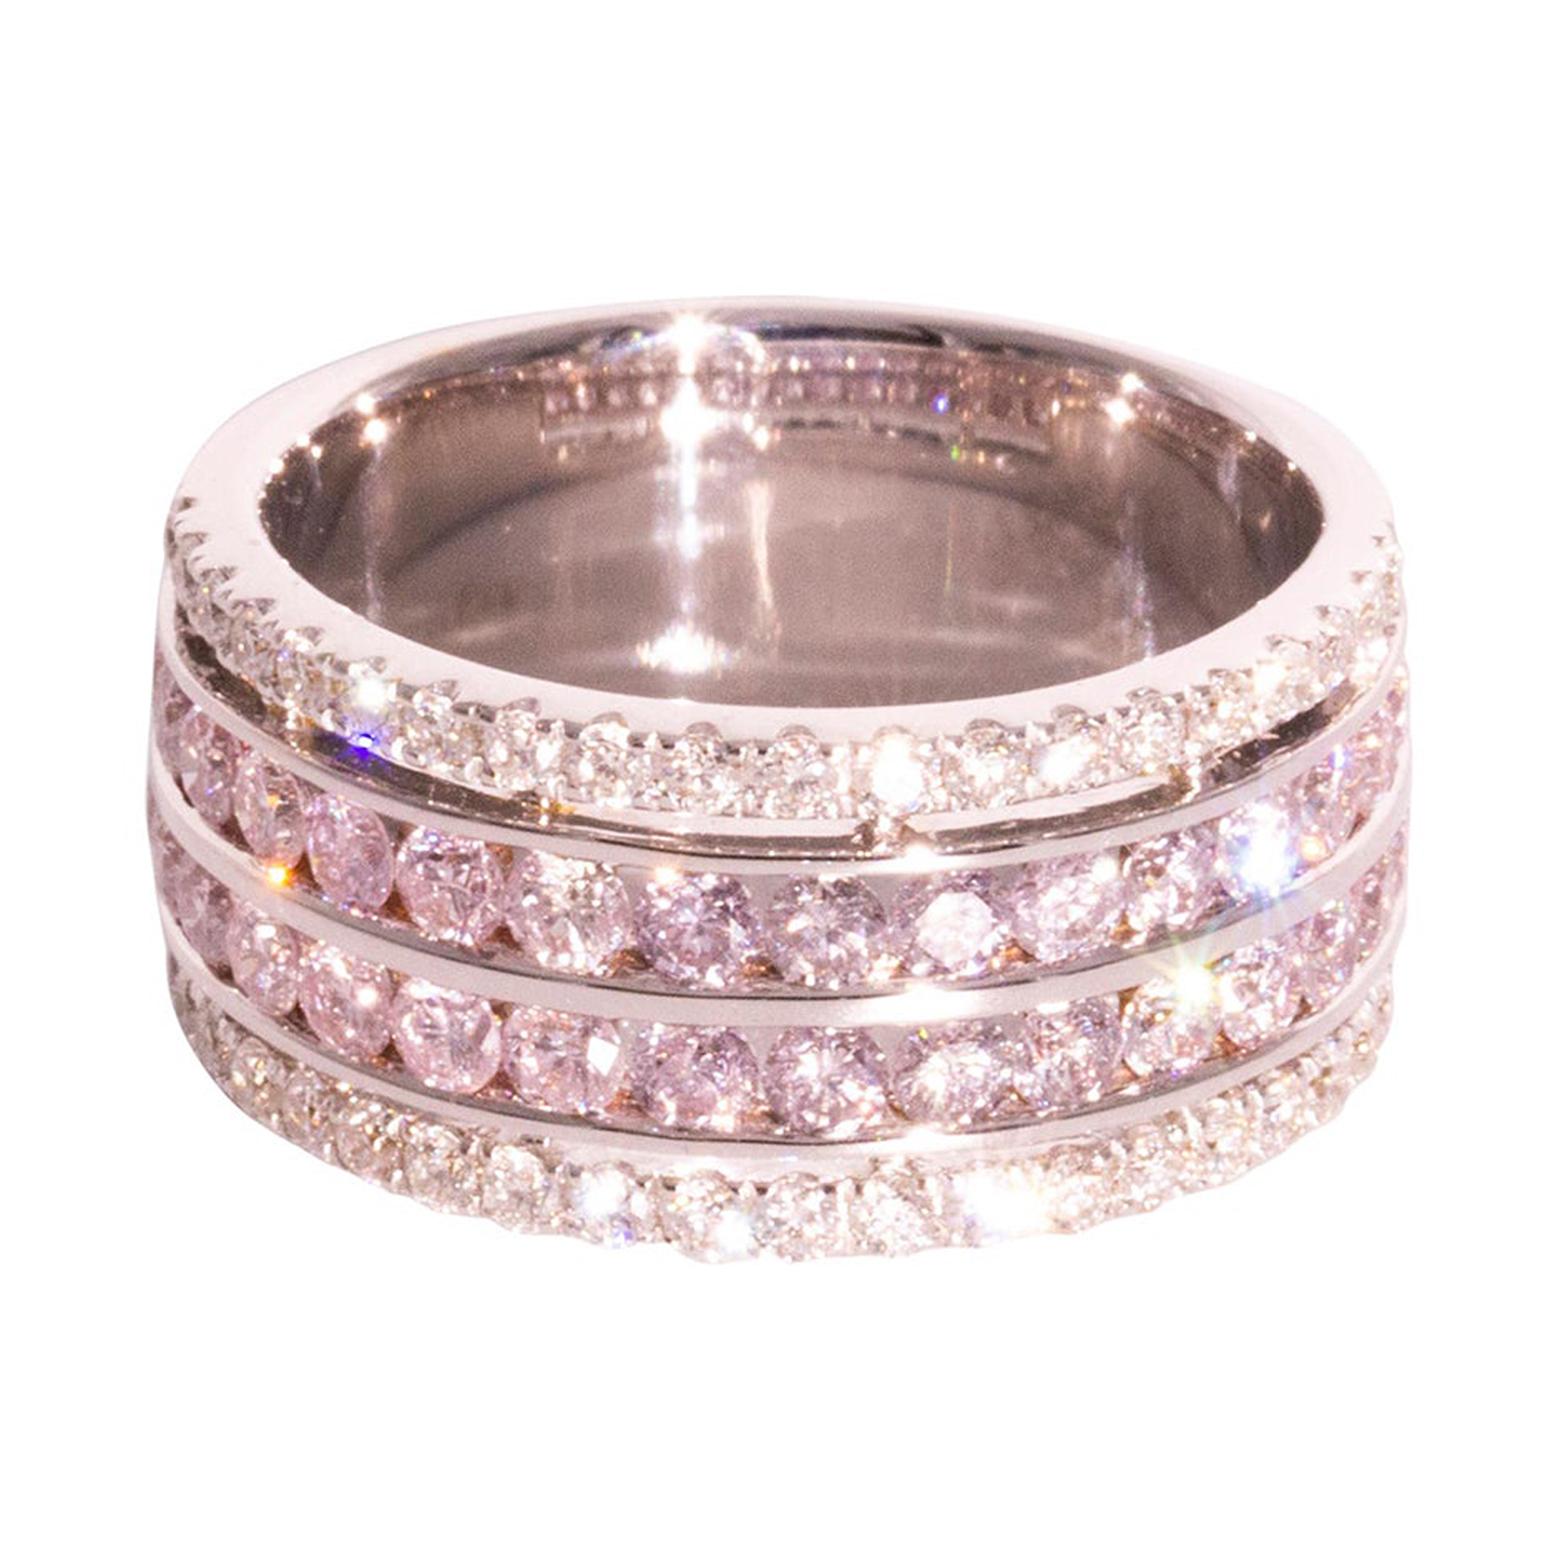 1.12 Carat Pink Diamonds and 0.40 Carat White Diamonds 18 Carat White Gold Ring